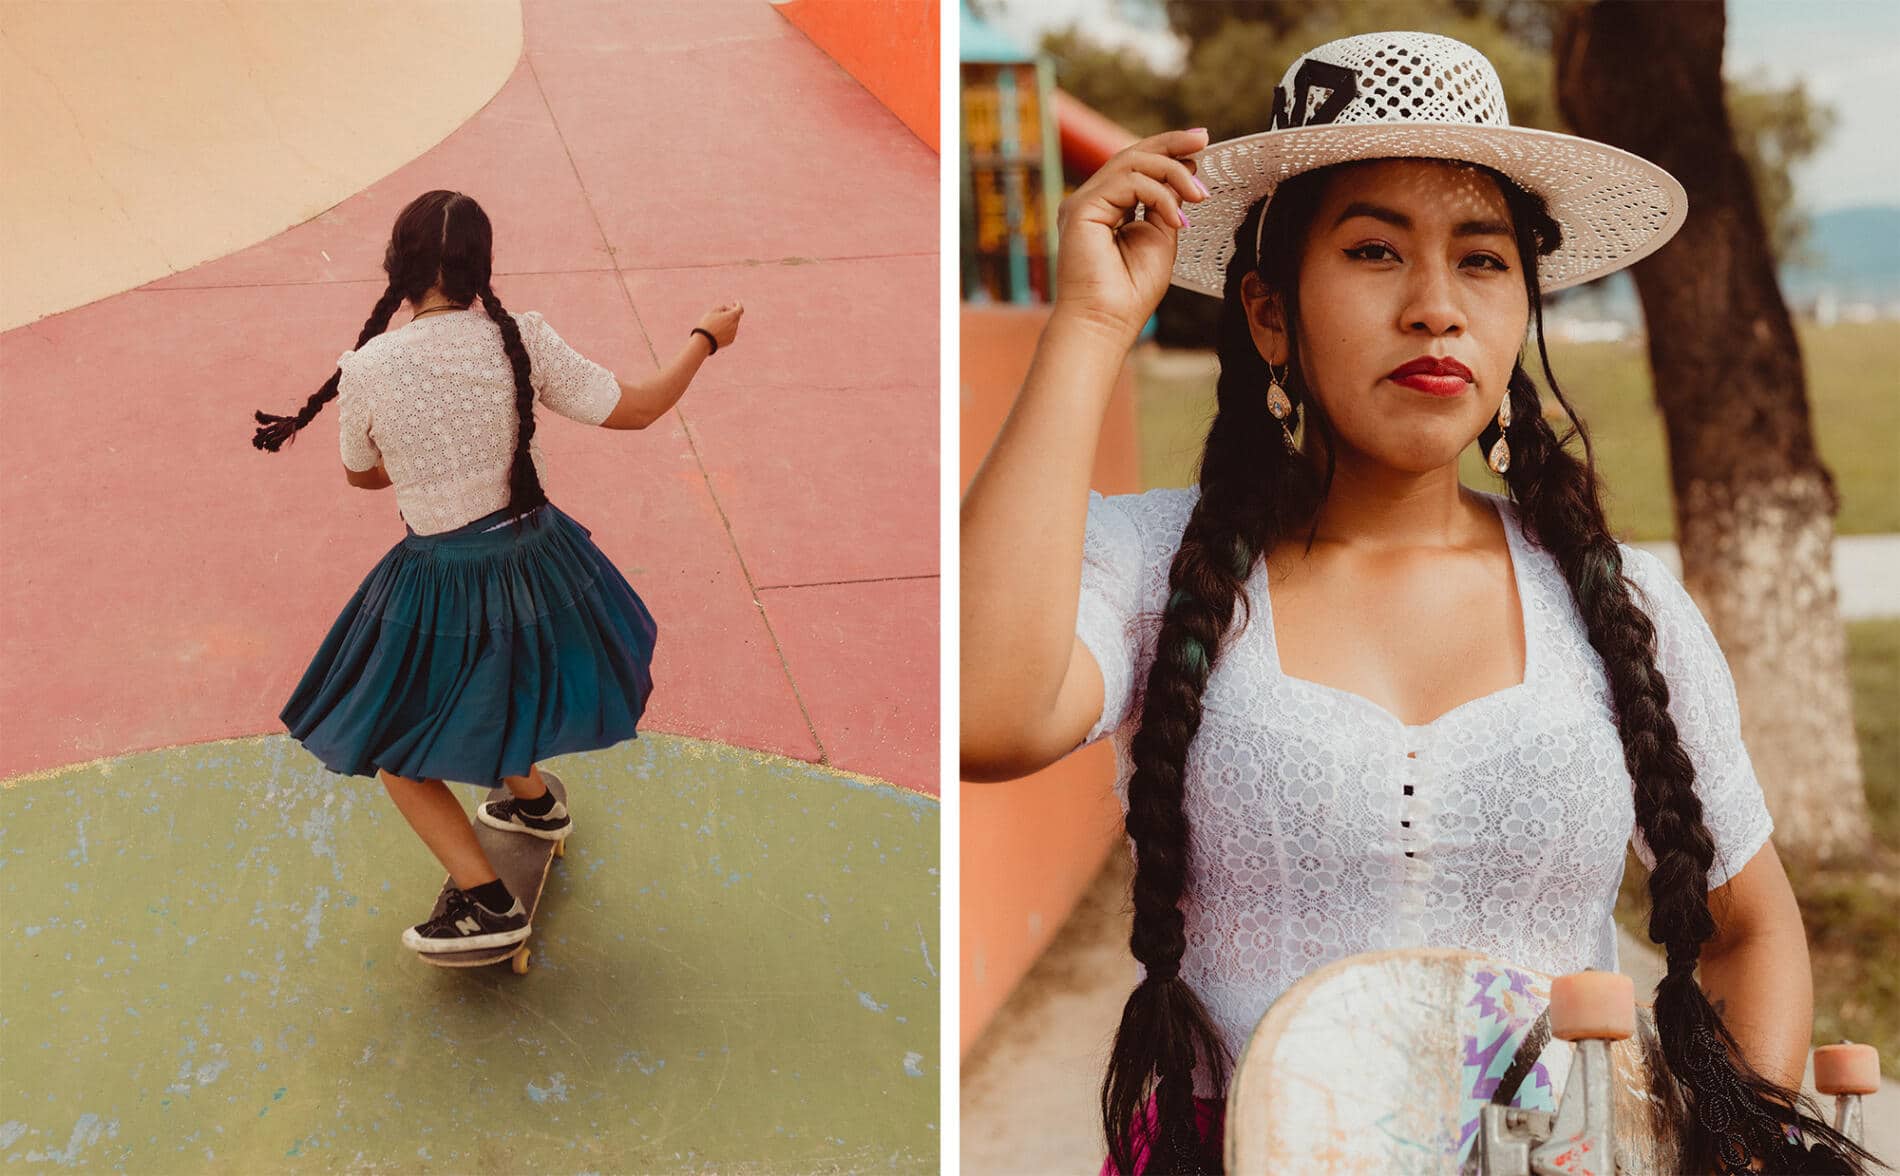 Celia D. Luna cholitas skater mujeres empoderadas